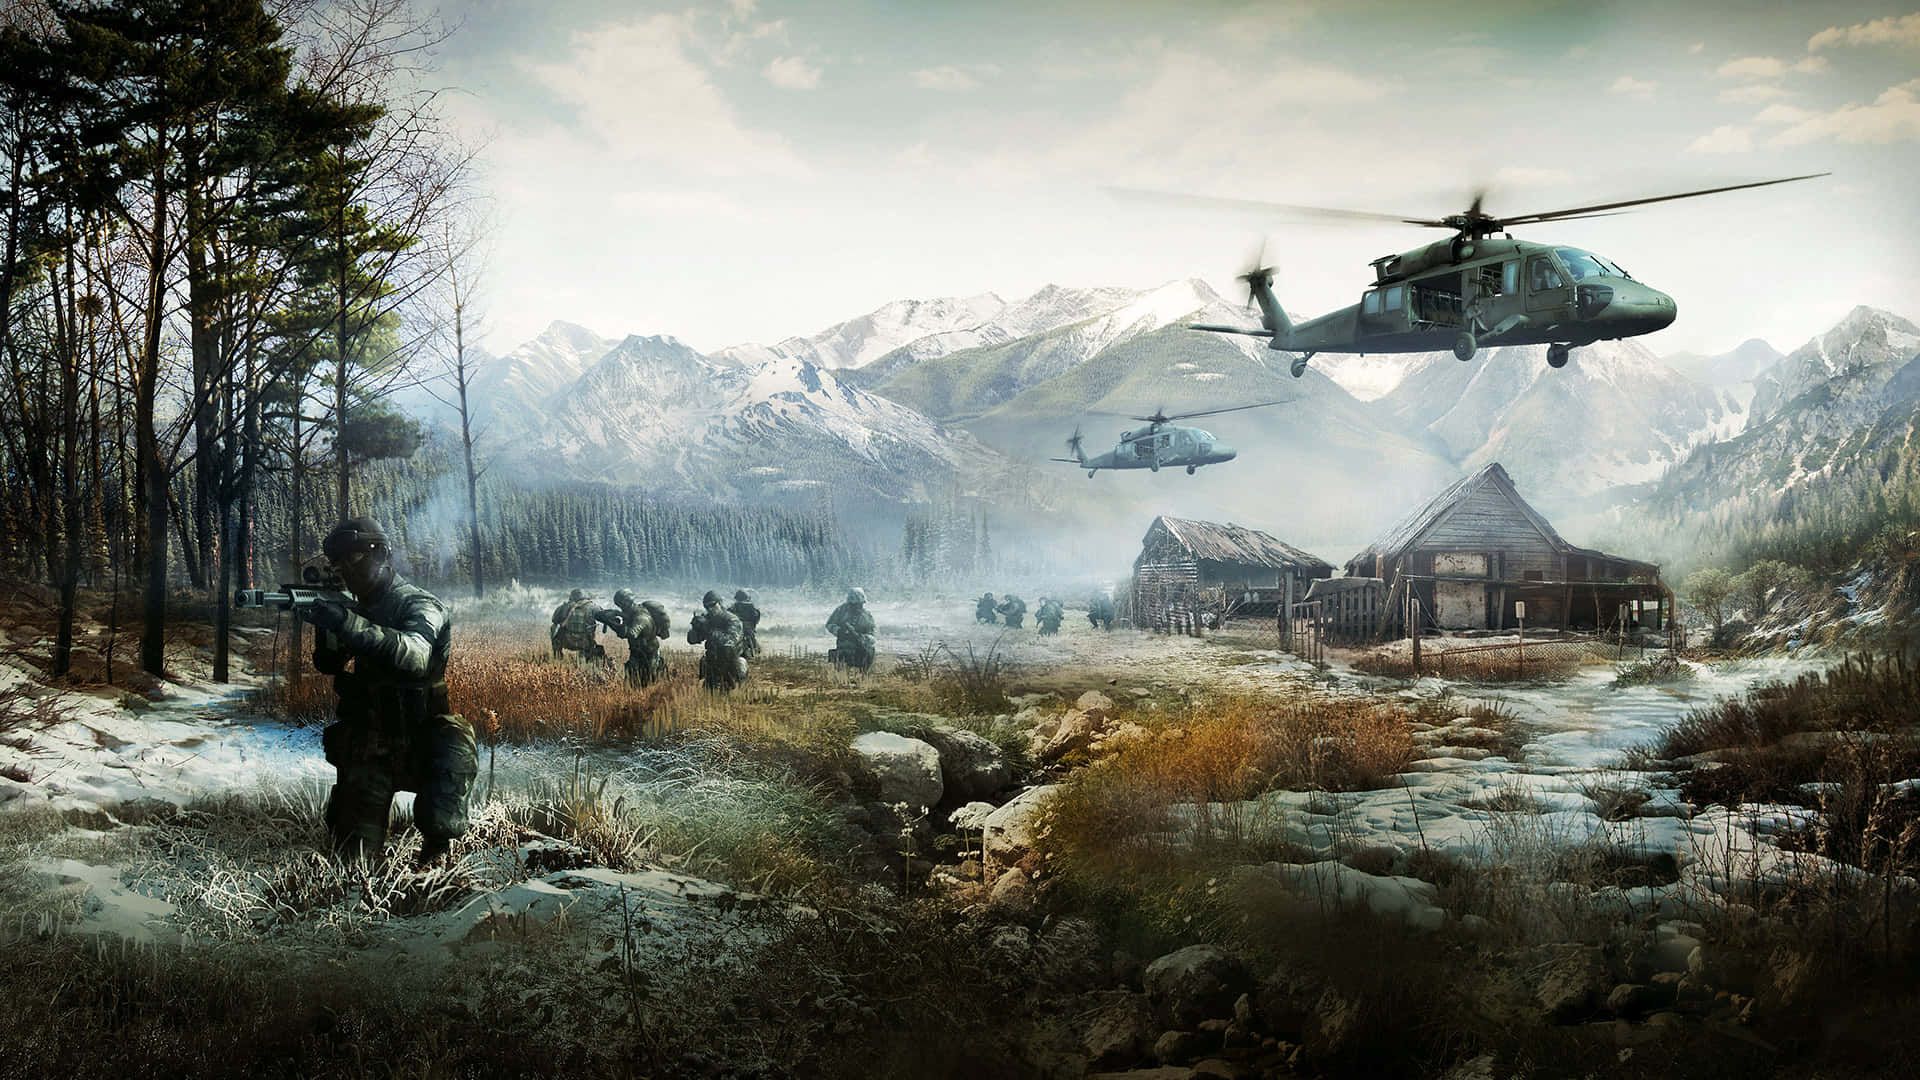 Explore your inner warrior in ‘Battlefield 4’.